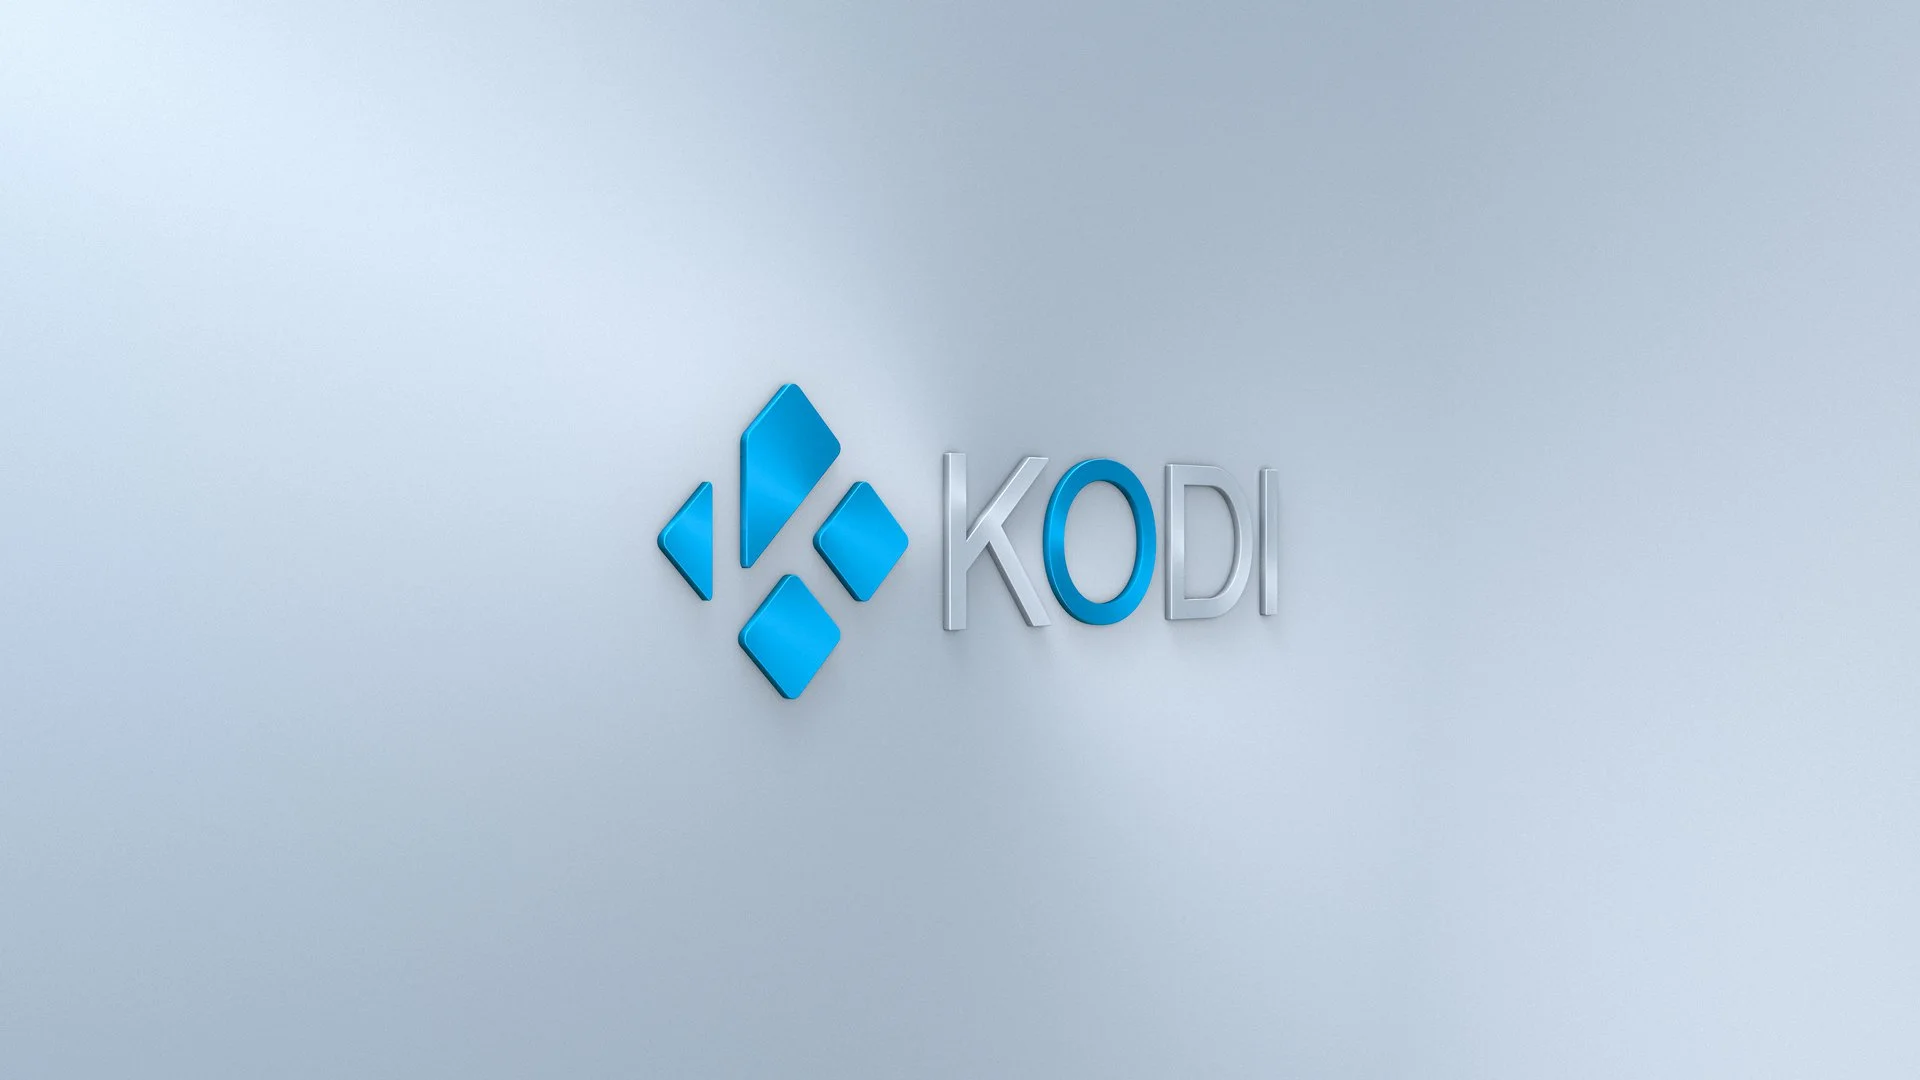 Kodi-Wallpaper-15B-1080p_samfisher